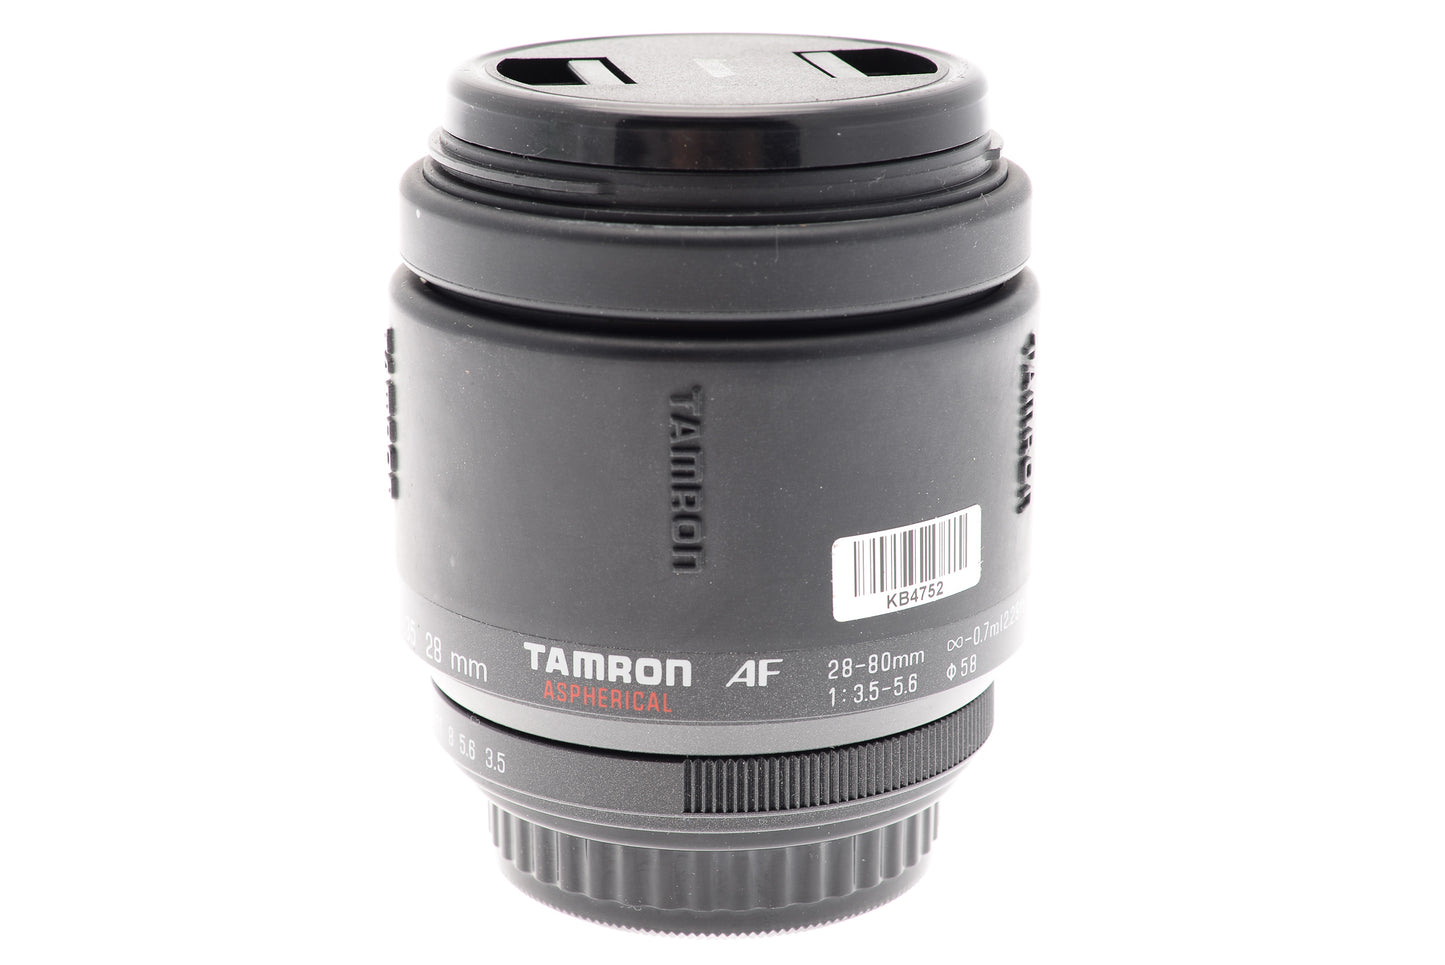 Tamron 28-80mm f3.5-5.6 AF Aspherical (77D)